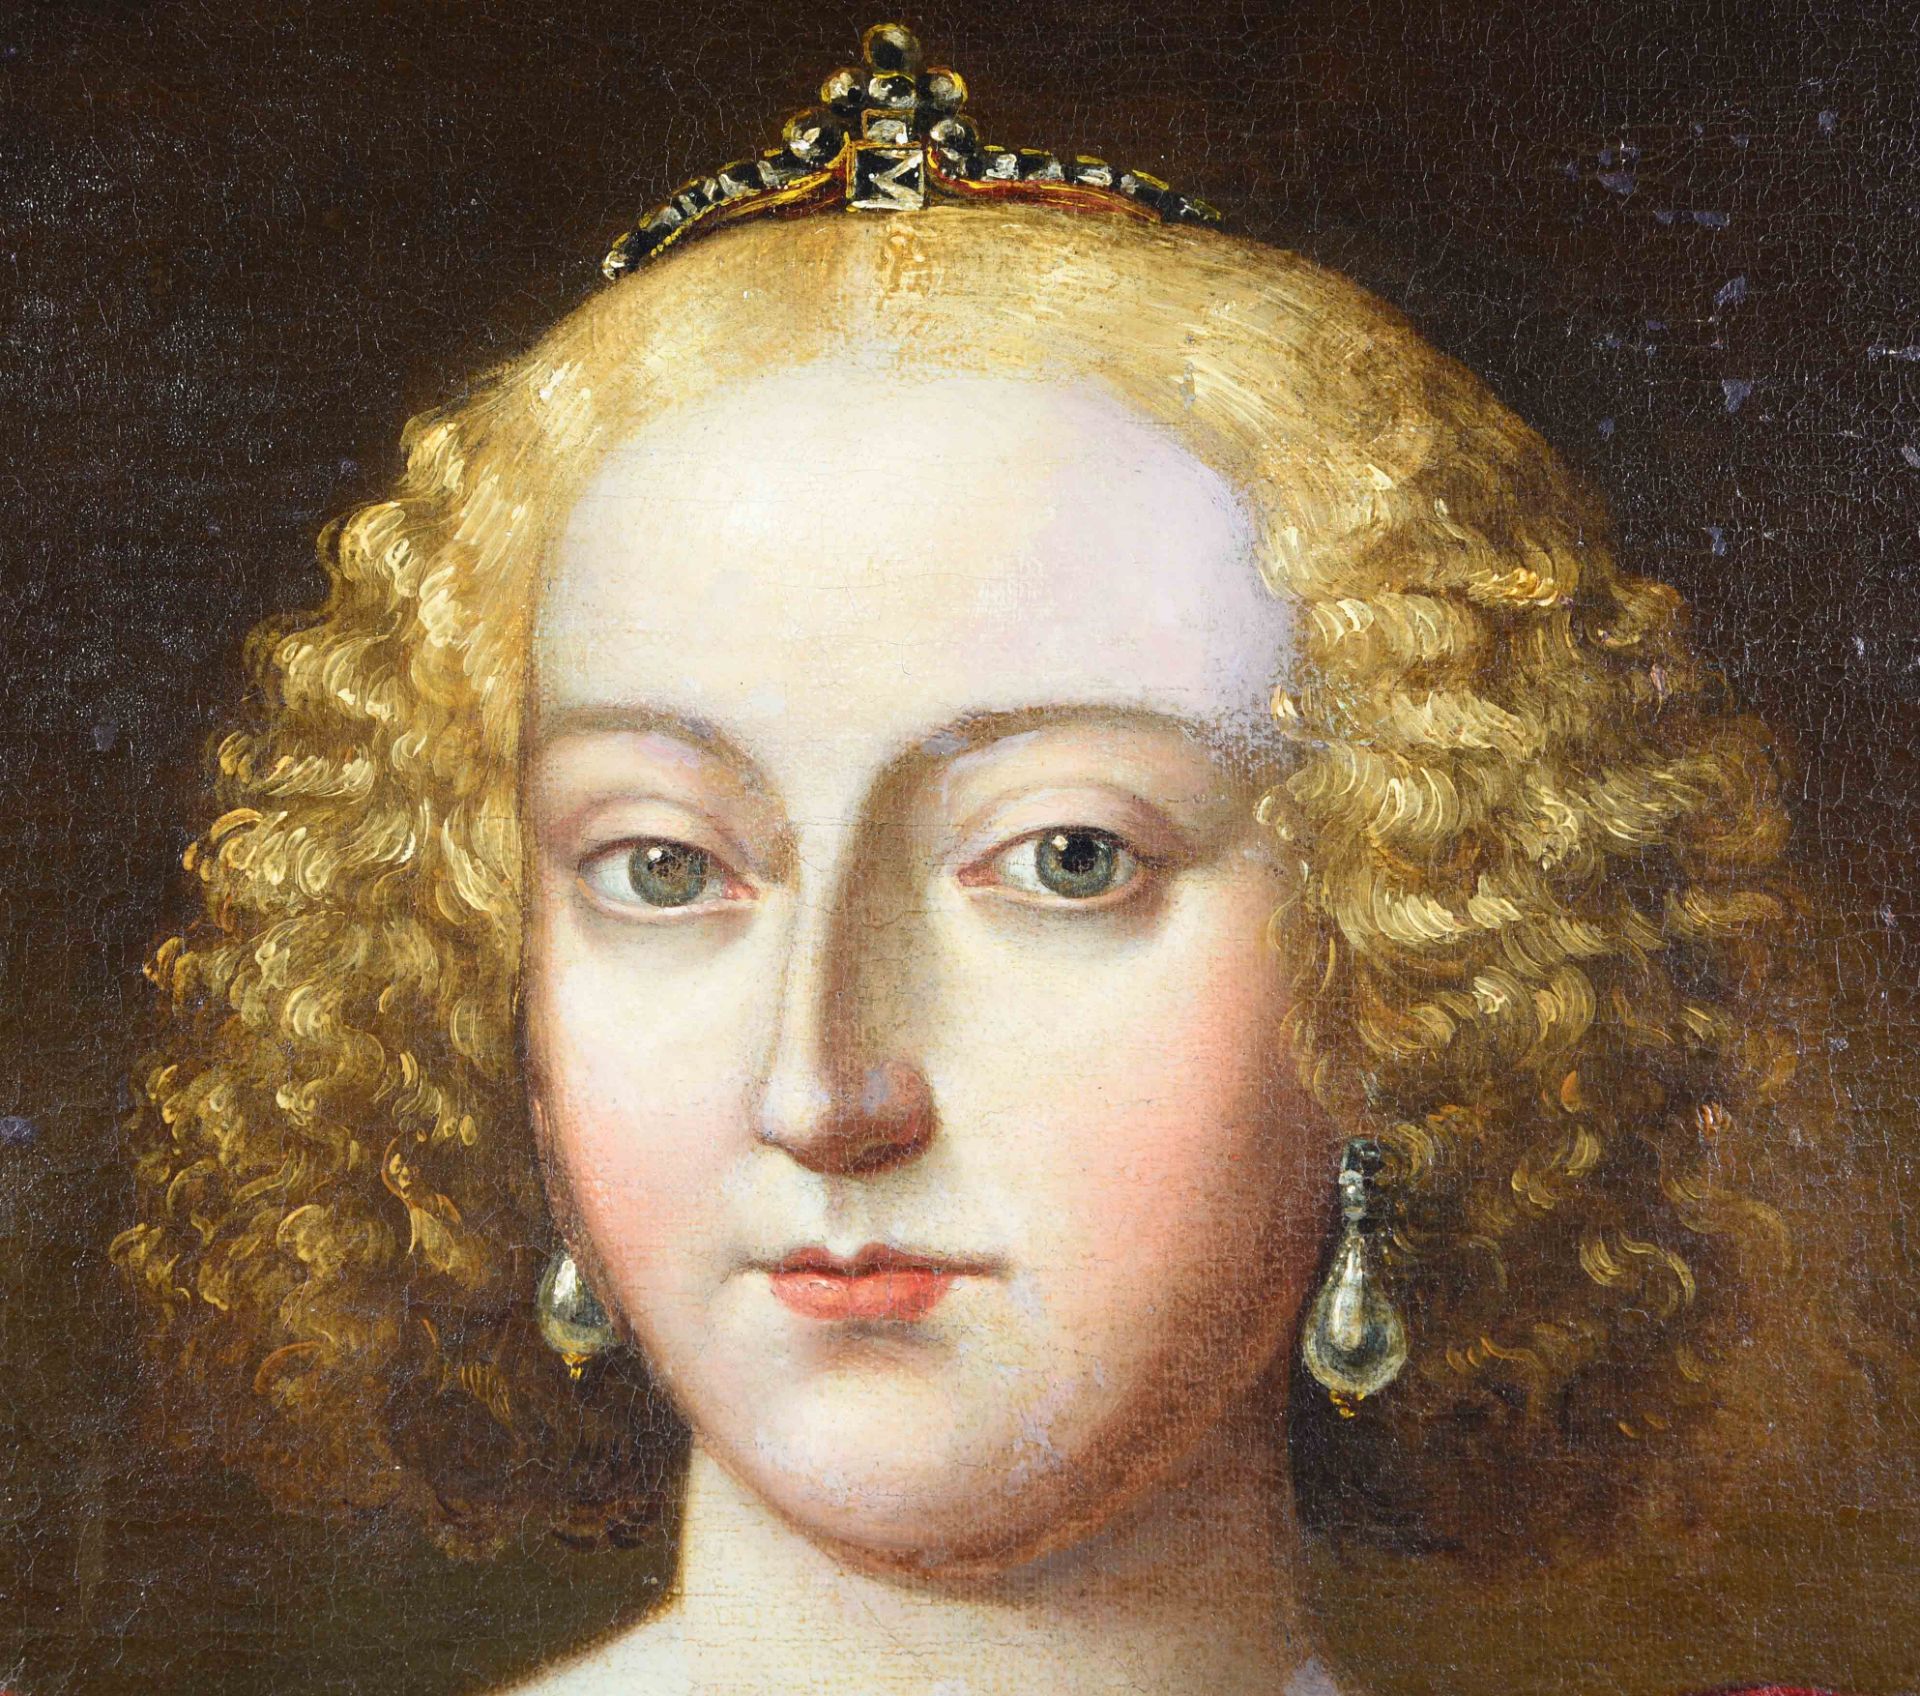 ÖSTERREICH/UNGARN, 18. JH.: Porträt von Maria Theresia im Krönungsornat. - Image 5 of 6